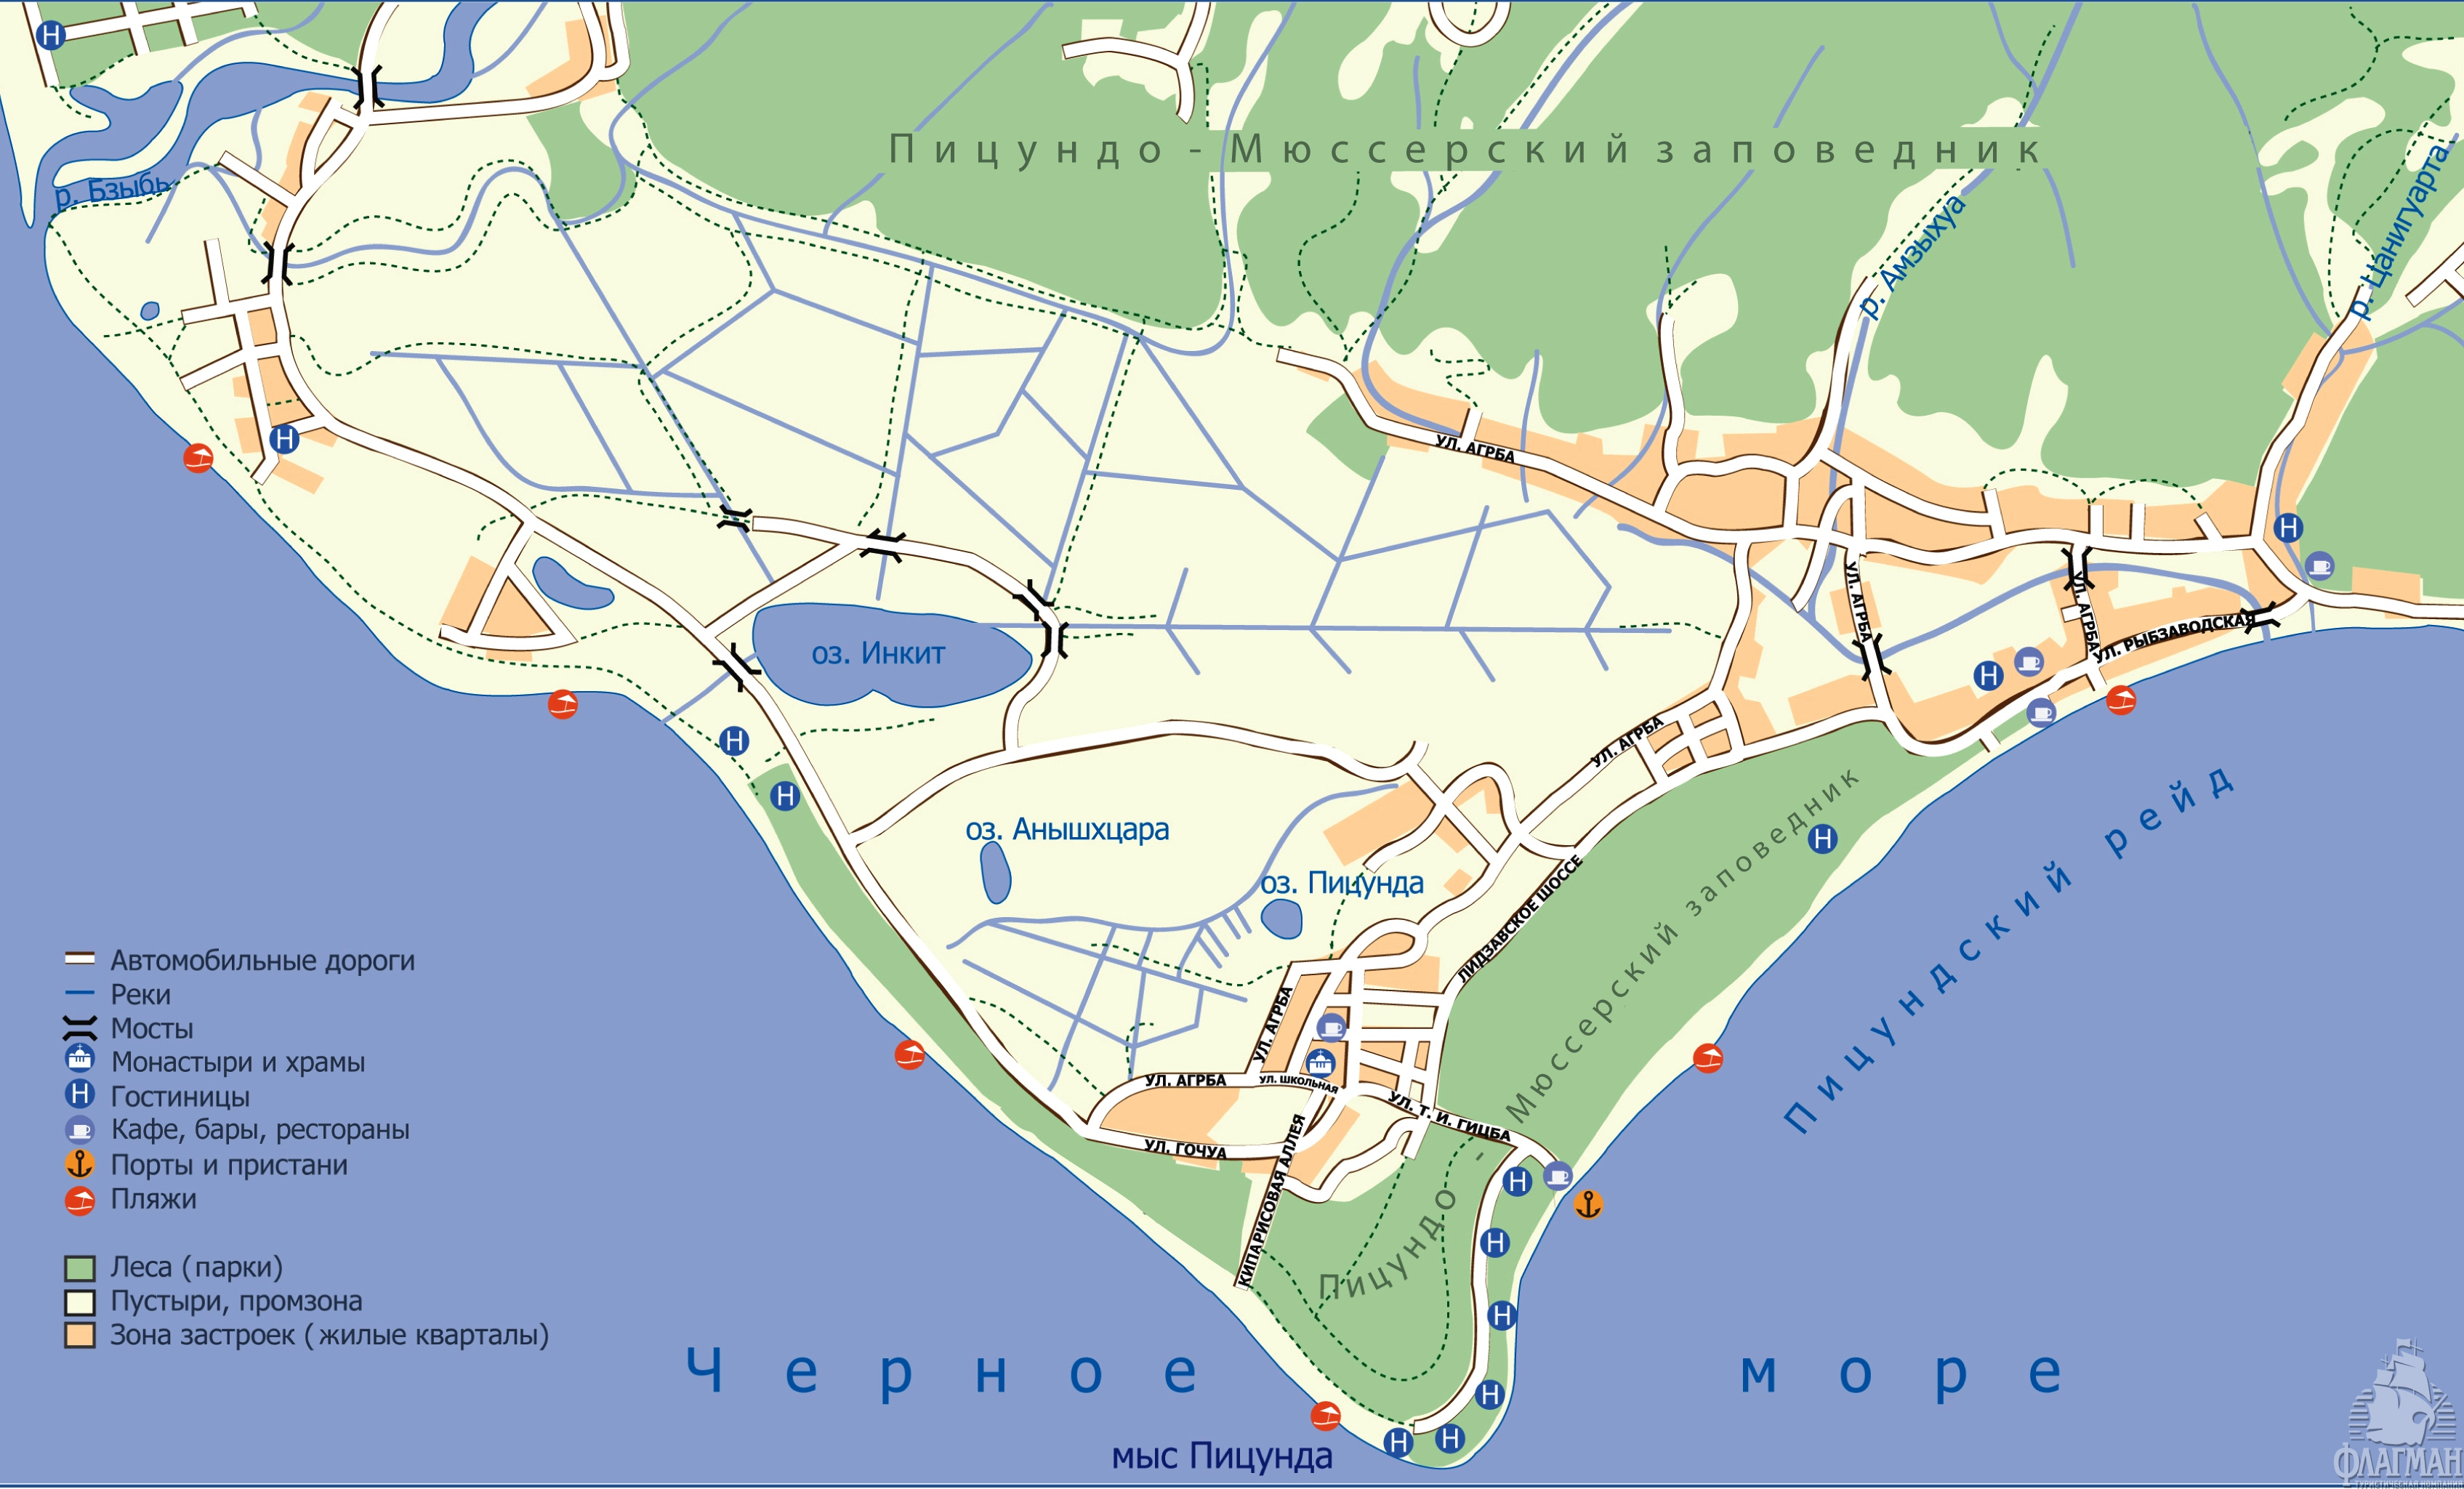  Карта-схема курорта Пицунда (сохраните и распечатайте)